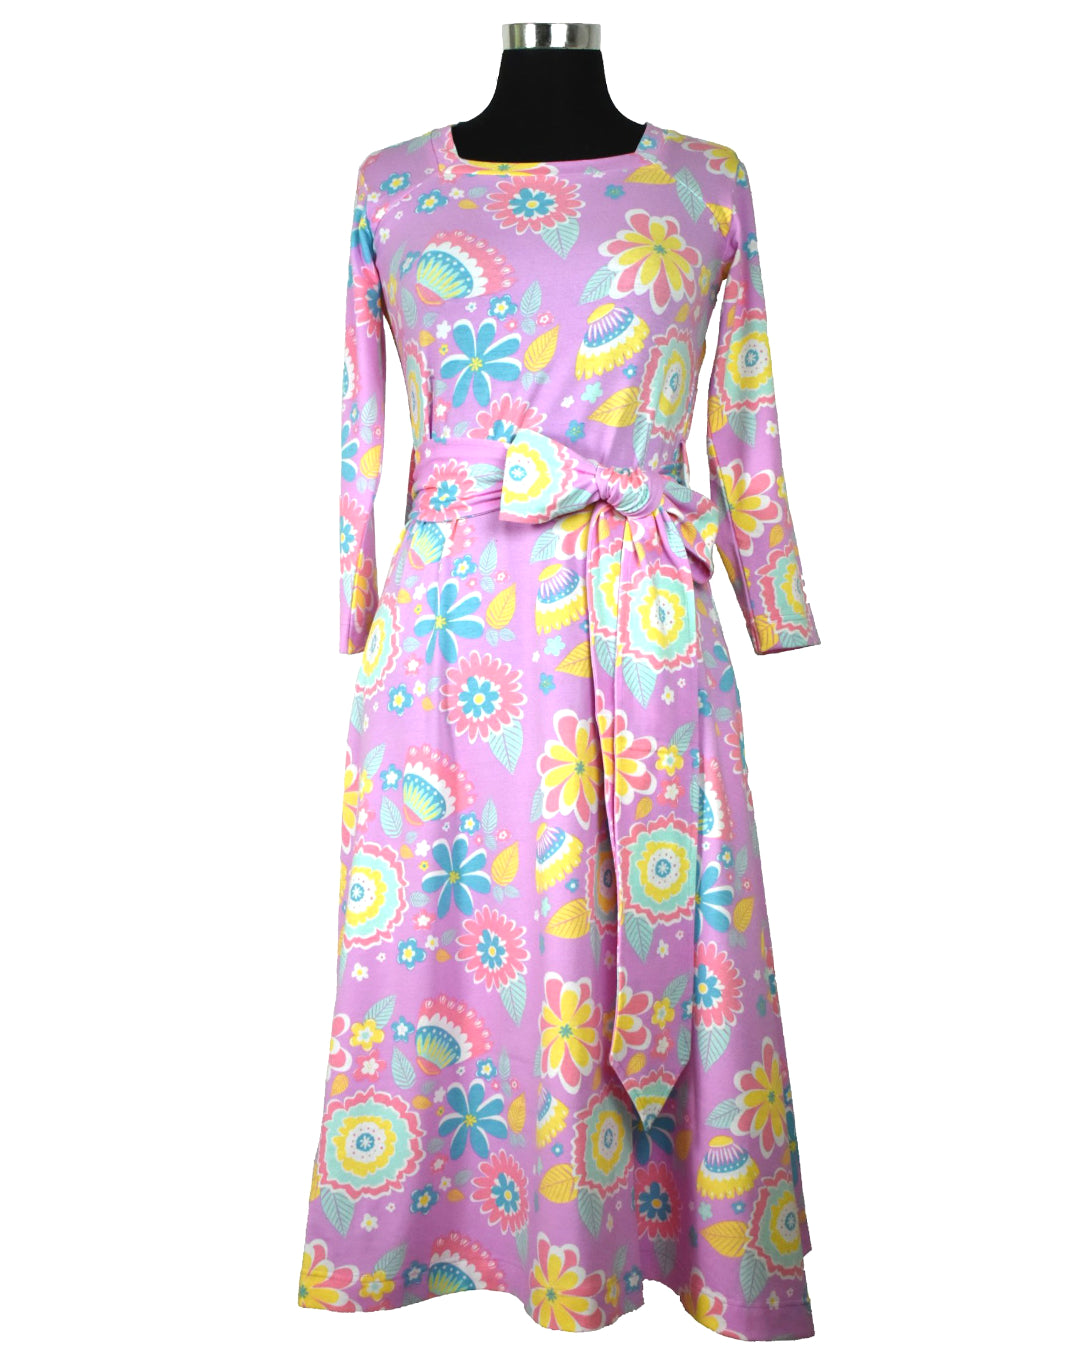 Rosa DamenKleid in A Linie mit Blumen Print und breitem Bauchgürtel von moromini aus Biobaumwolle